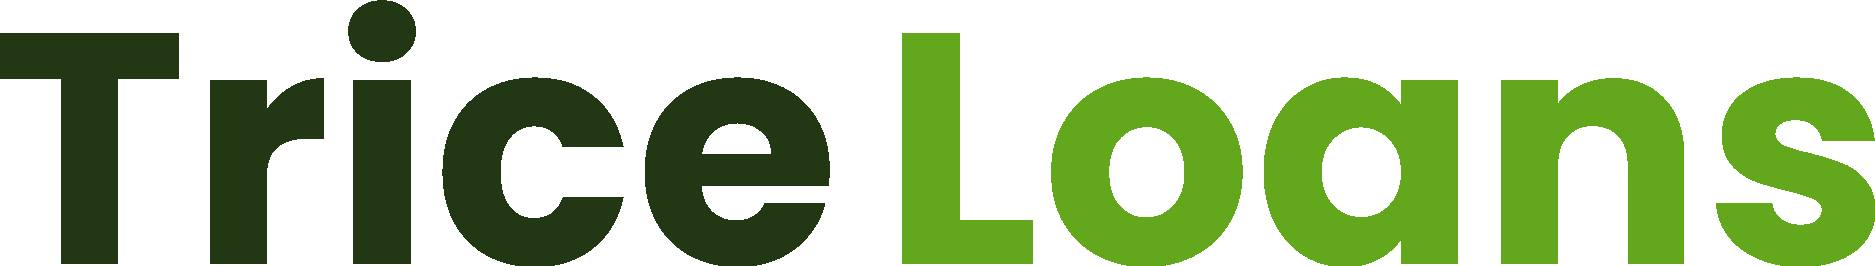 TriceLoans Wordmark Logo Vector